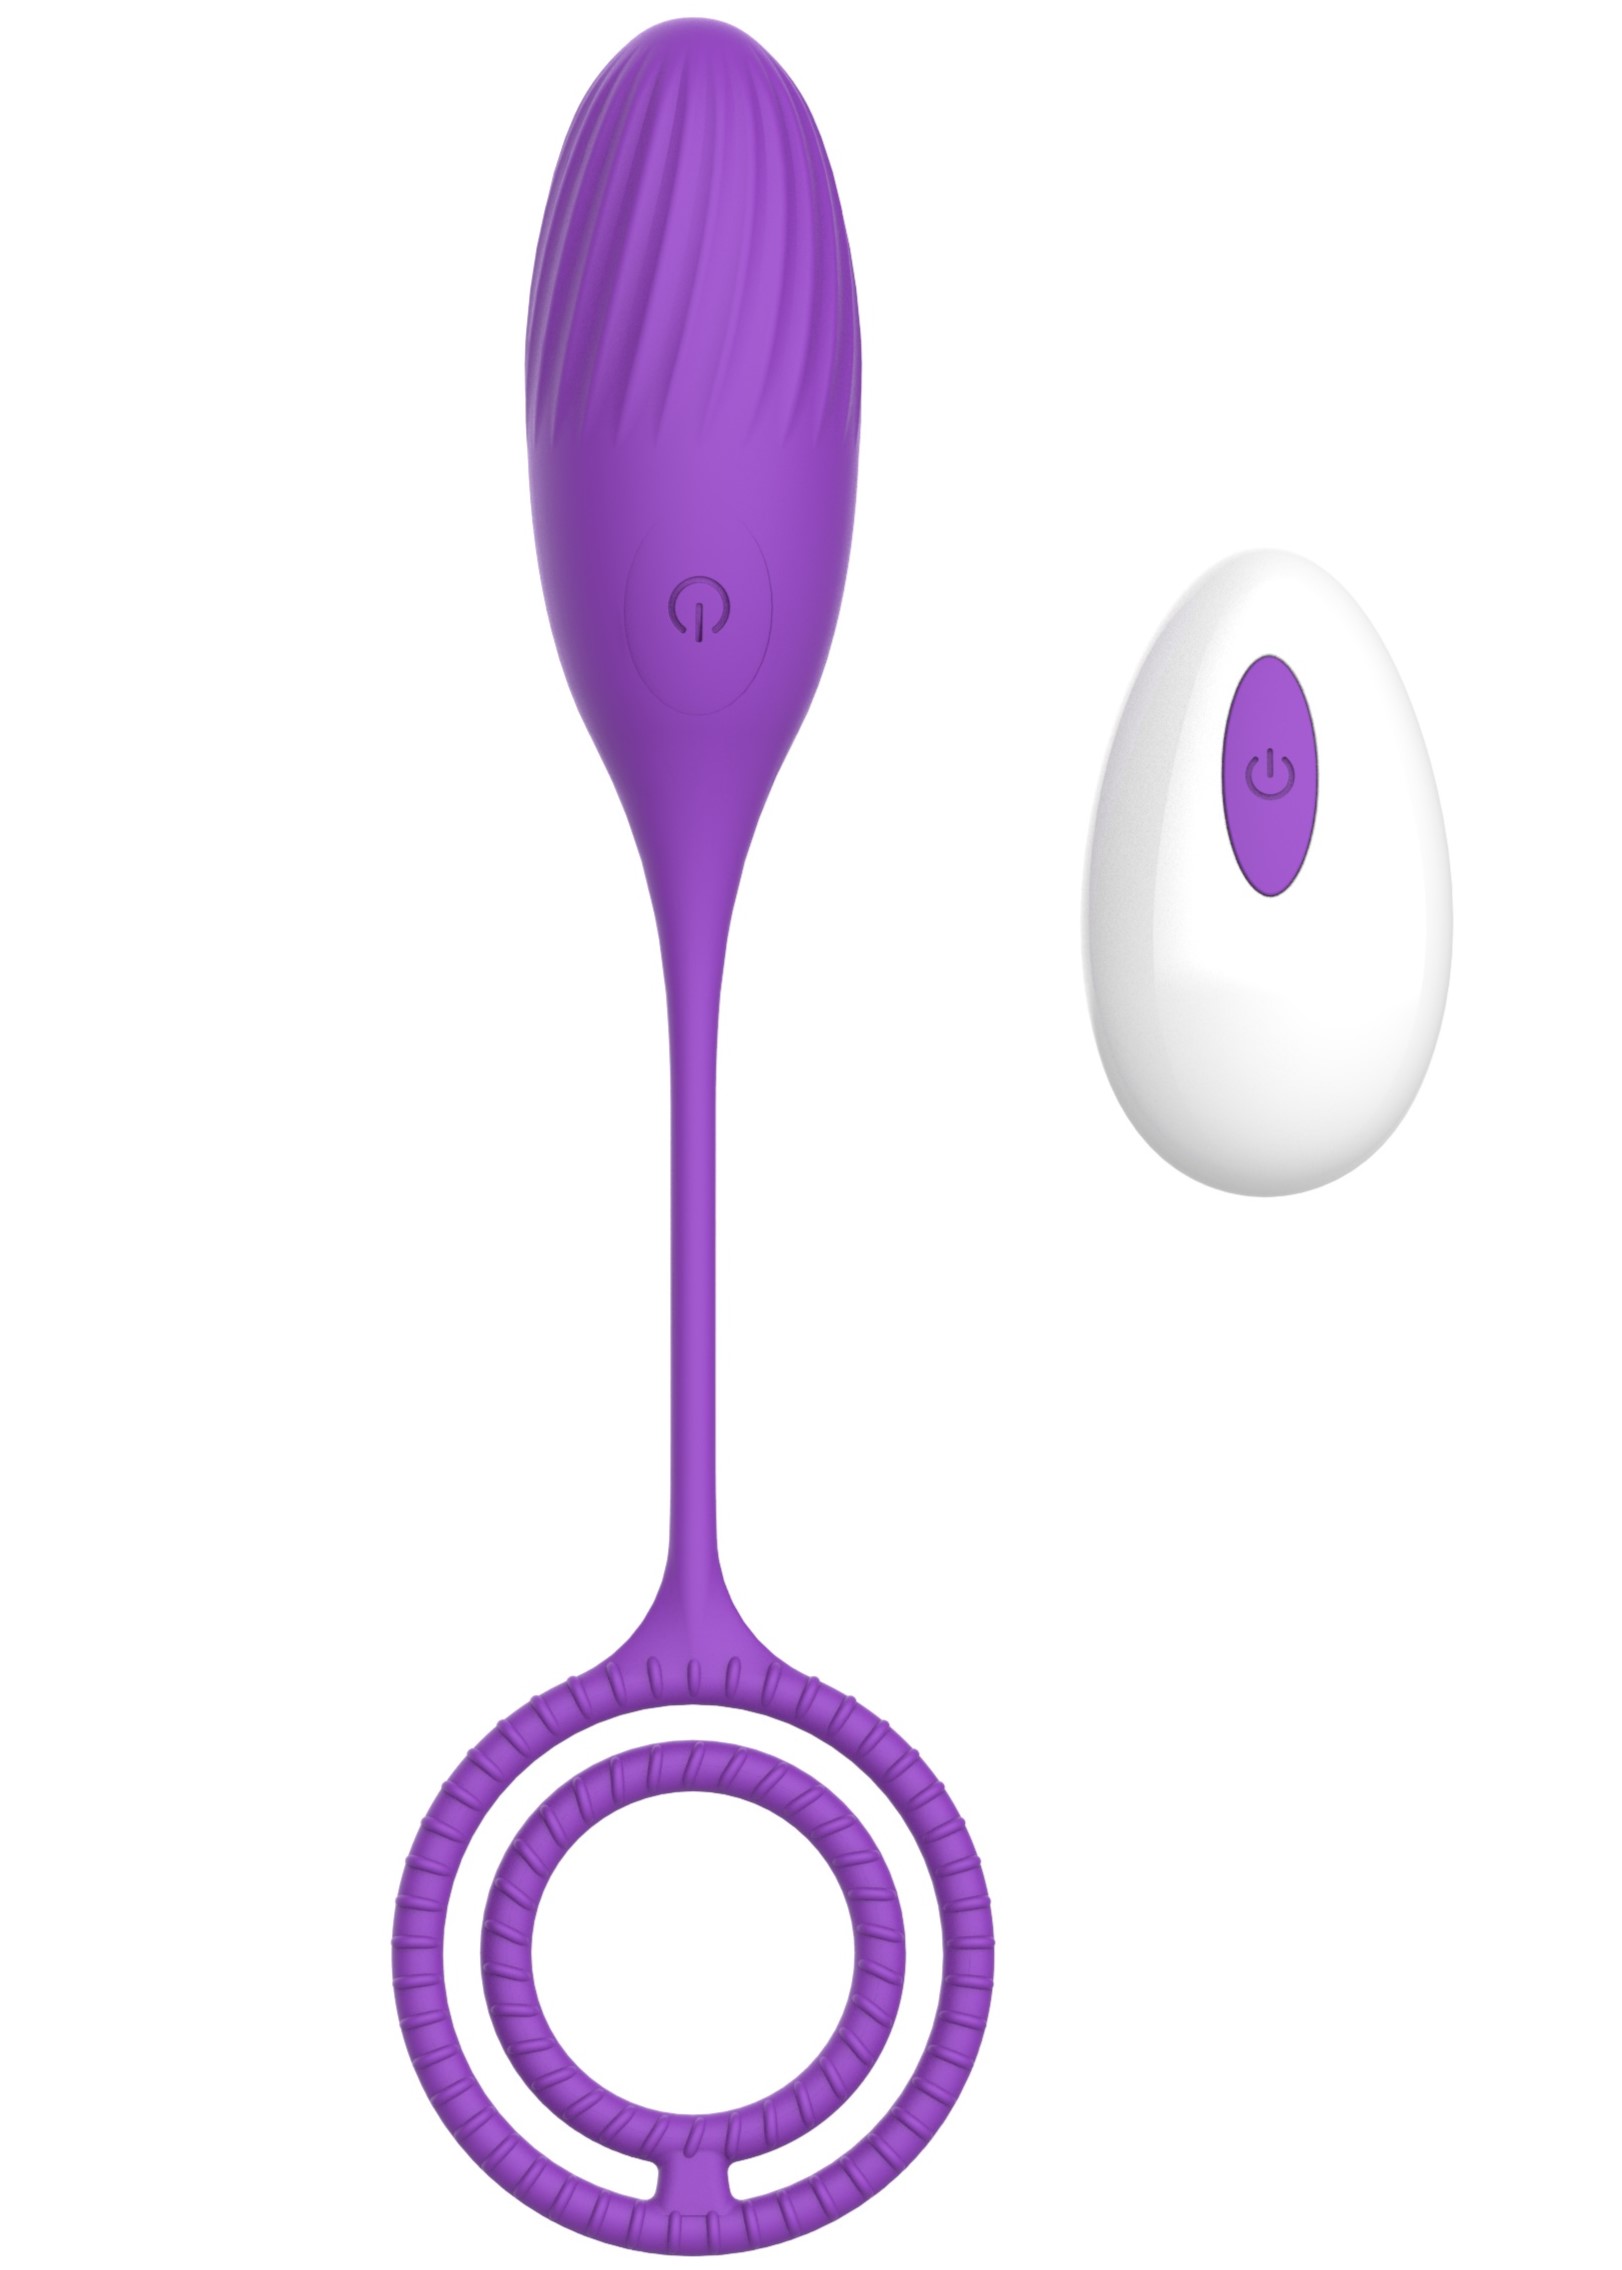 Ou Vibrator Elia Love Egg, 10 Moduri Vibratii, Remote Control, Silicon, USB, Violet, 21.4 cm, Mokko Toys, Velvet Obsession